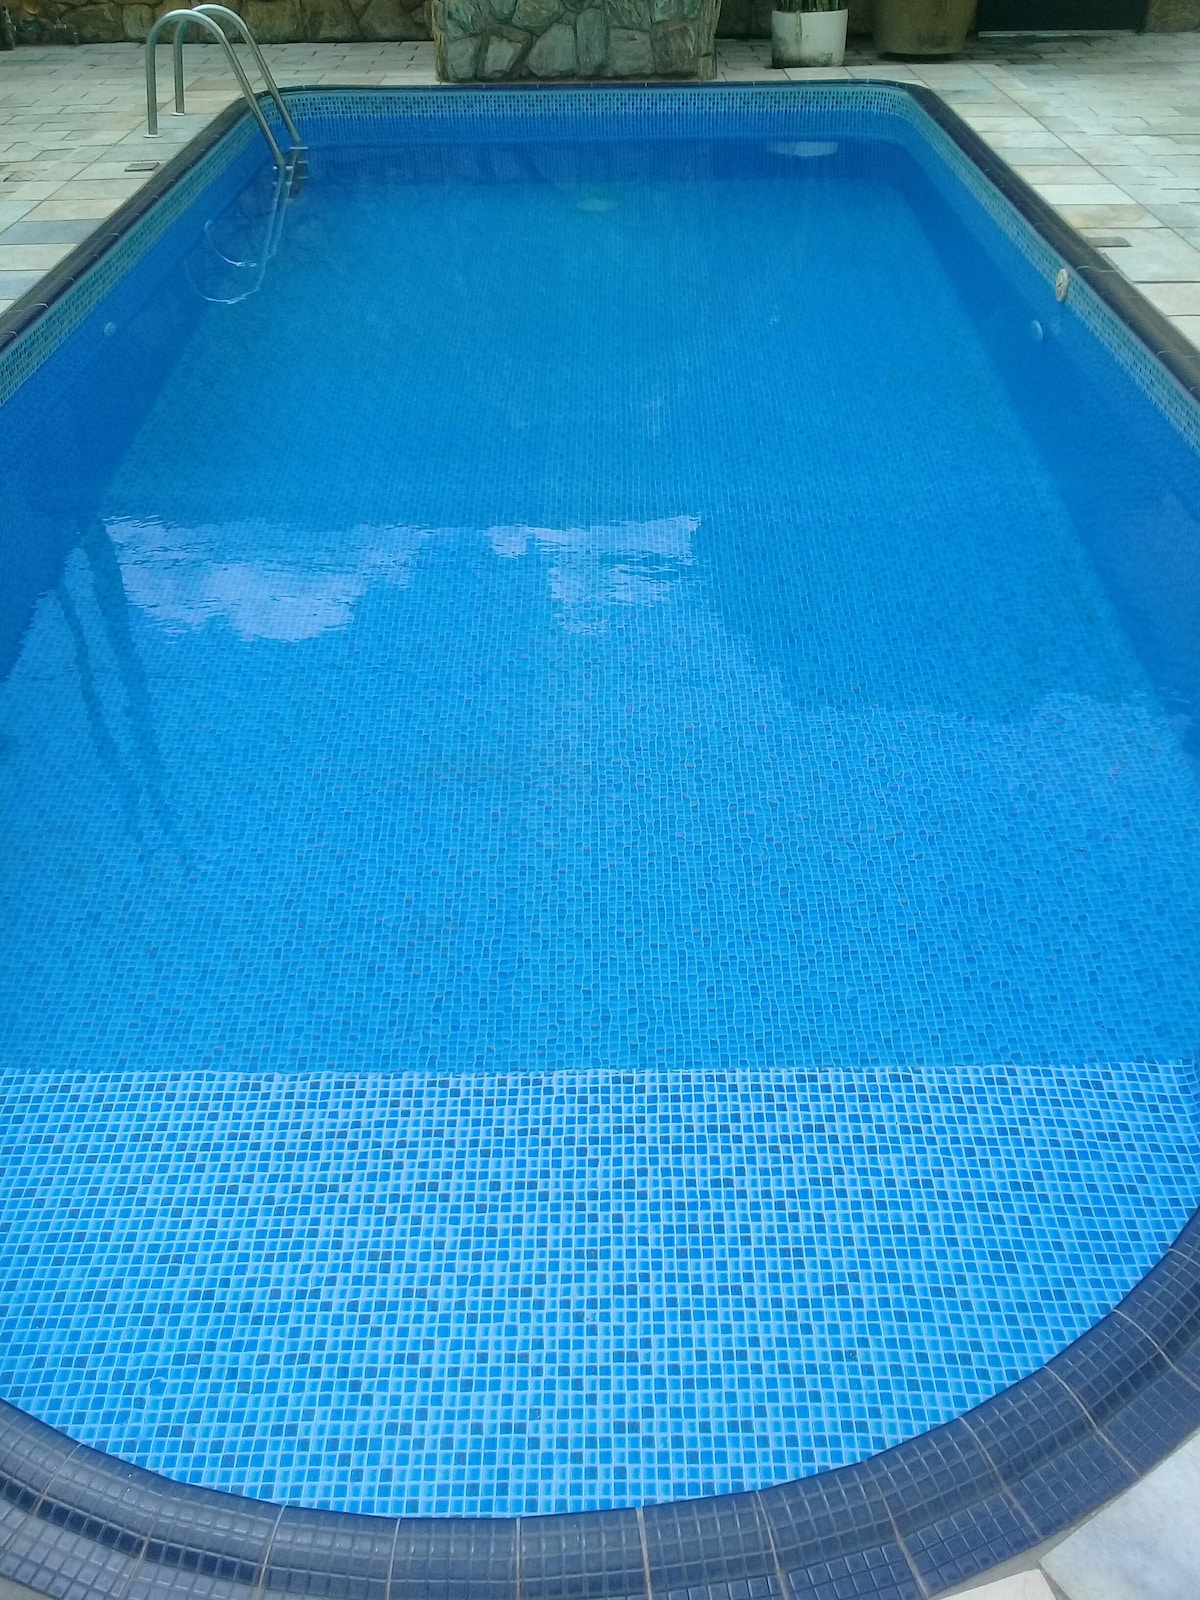 Casa com piscina para família e amigos